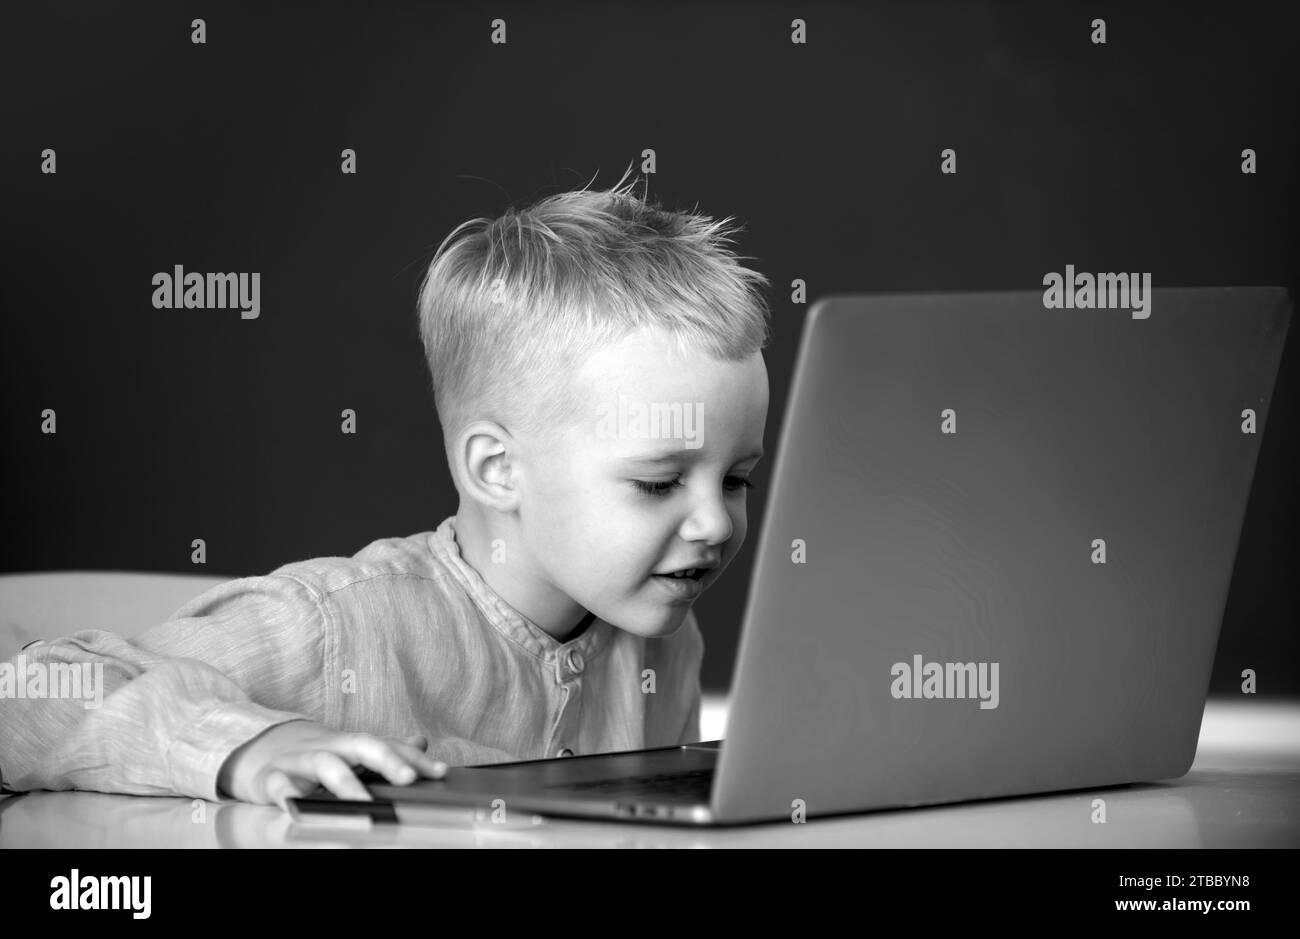 Petit garçon étudiant utilisant un ordinateur portable dans la classe d'école. Pupille blonde drôle au tableau noir Banque D'Images